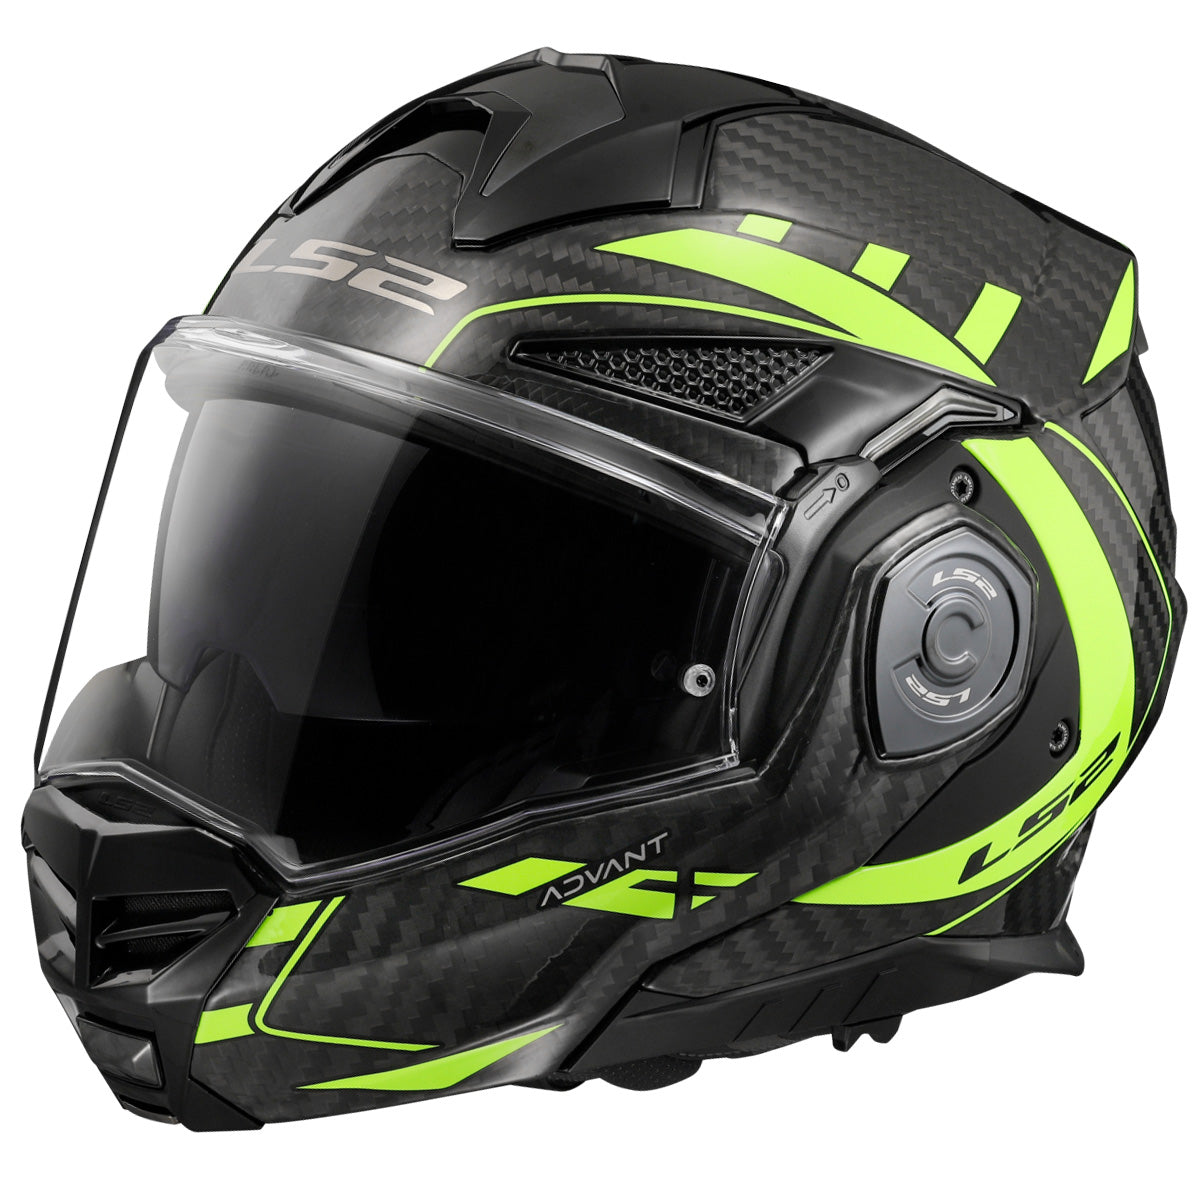 Riderwear | LS2 FF901 ADVANT X CARBON Flip-Up Helmet - Future Yellow